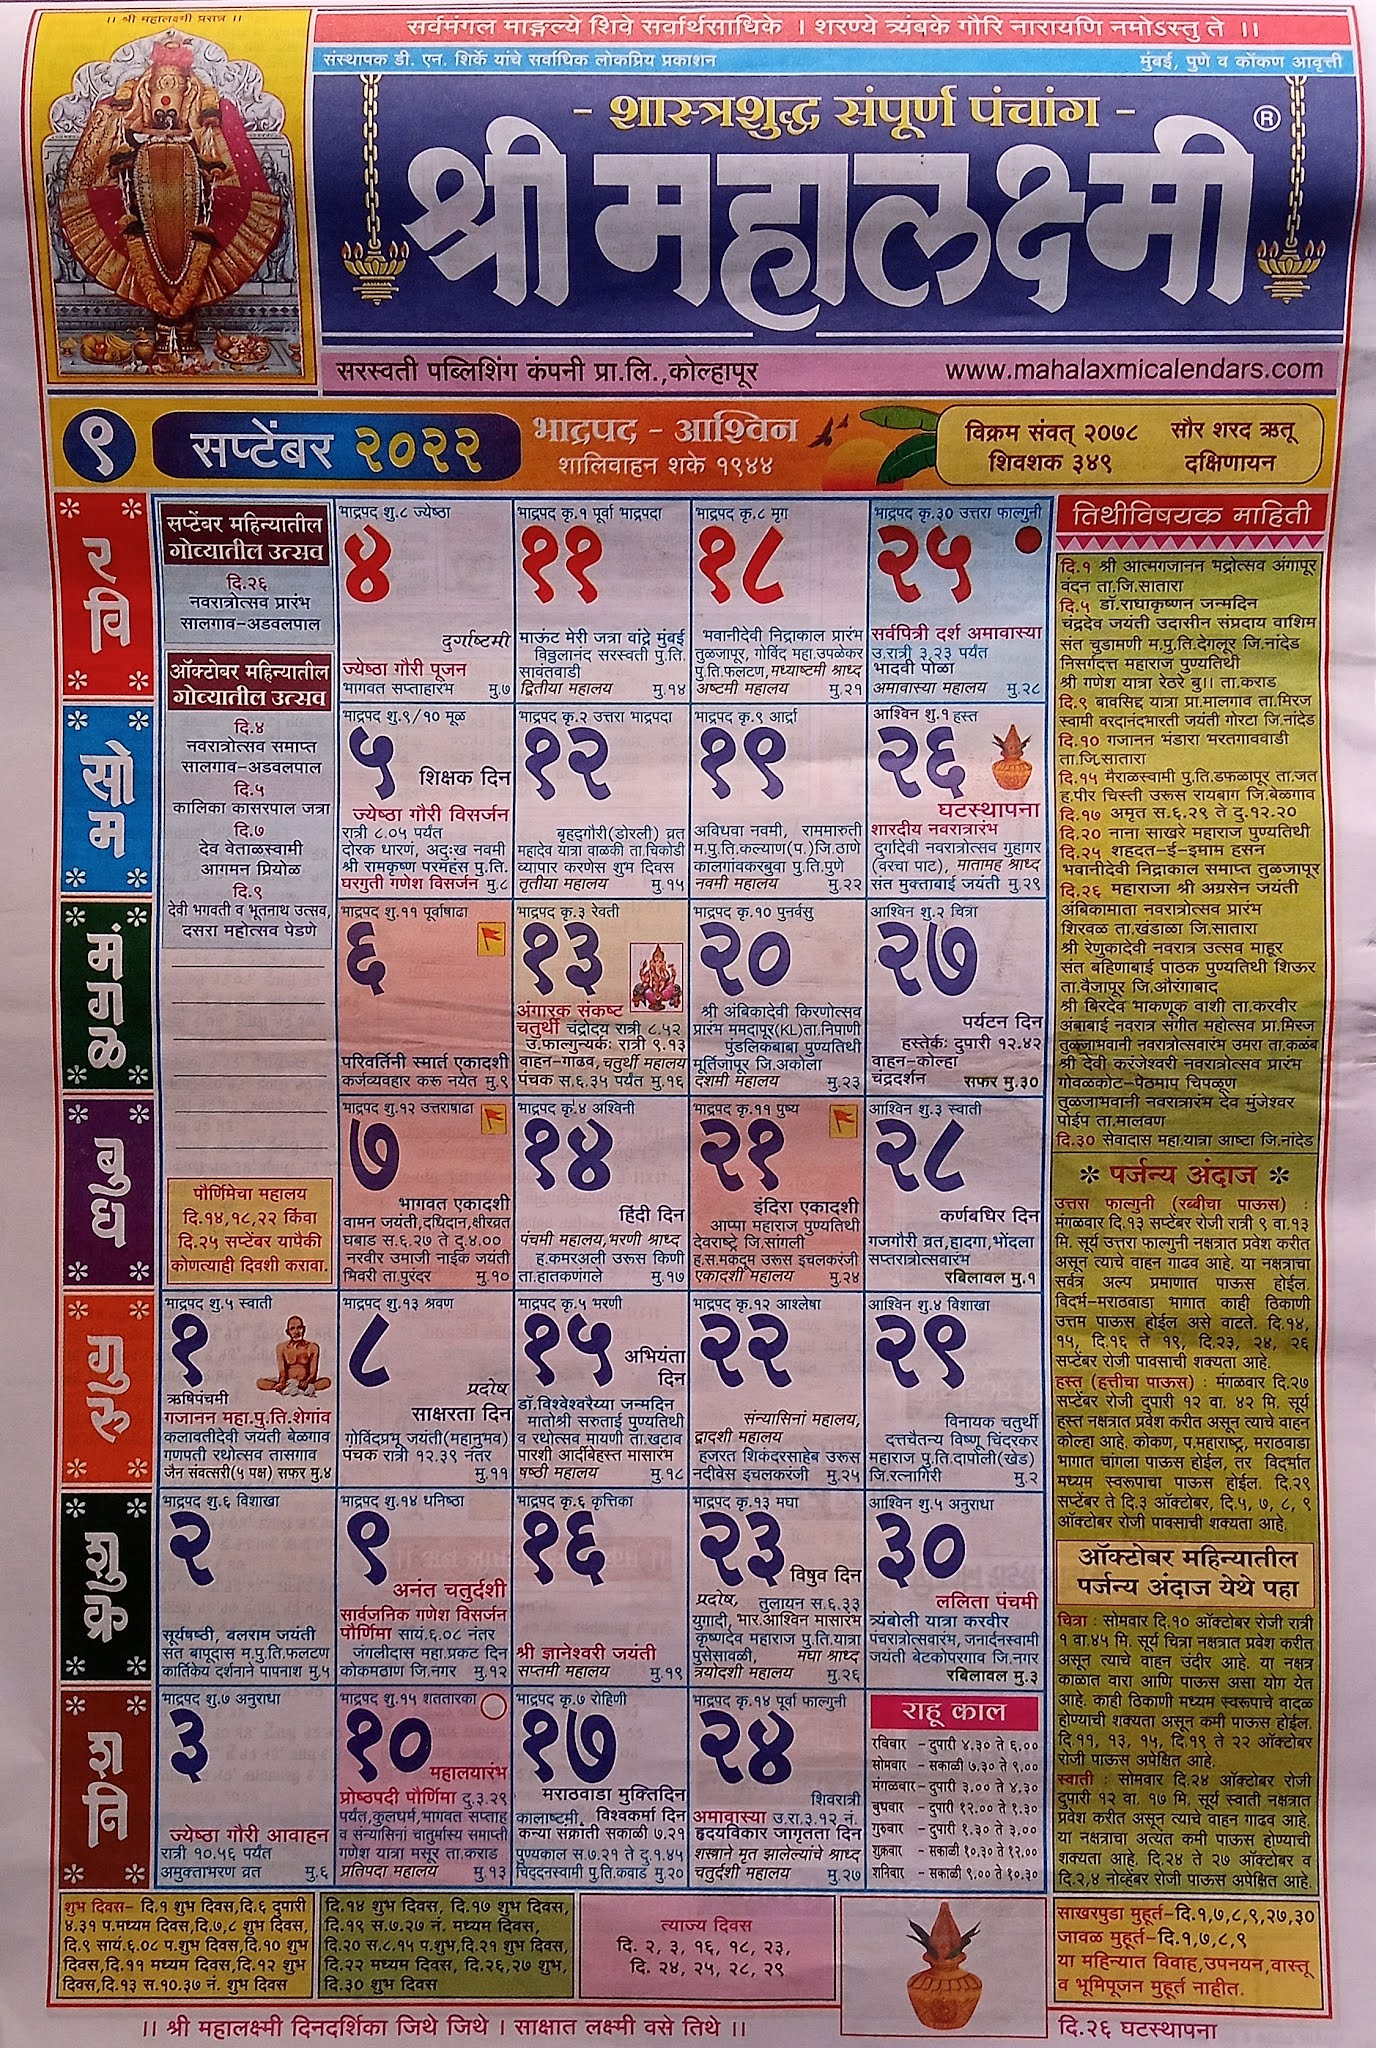 kultejas-marathi-kalnirnay-calendar